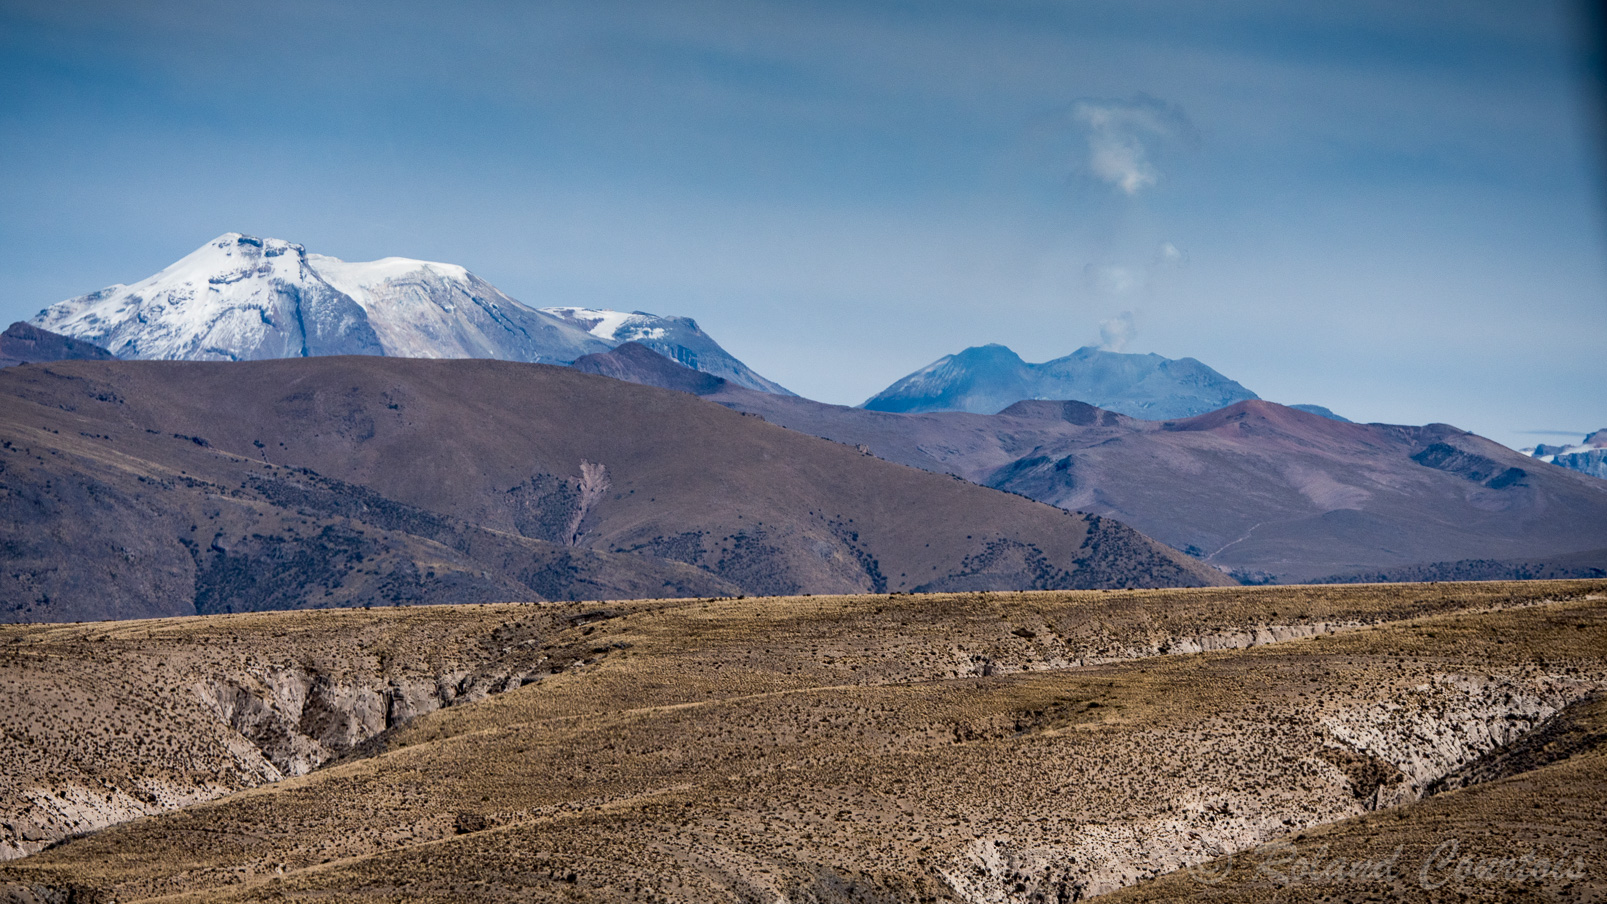 Au cœur des Andes péruviennes, la route contourne le volcan Misti (5 825 mètres d'altitude)